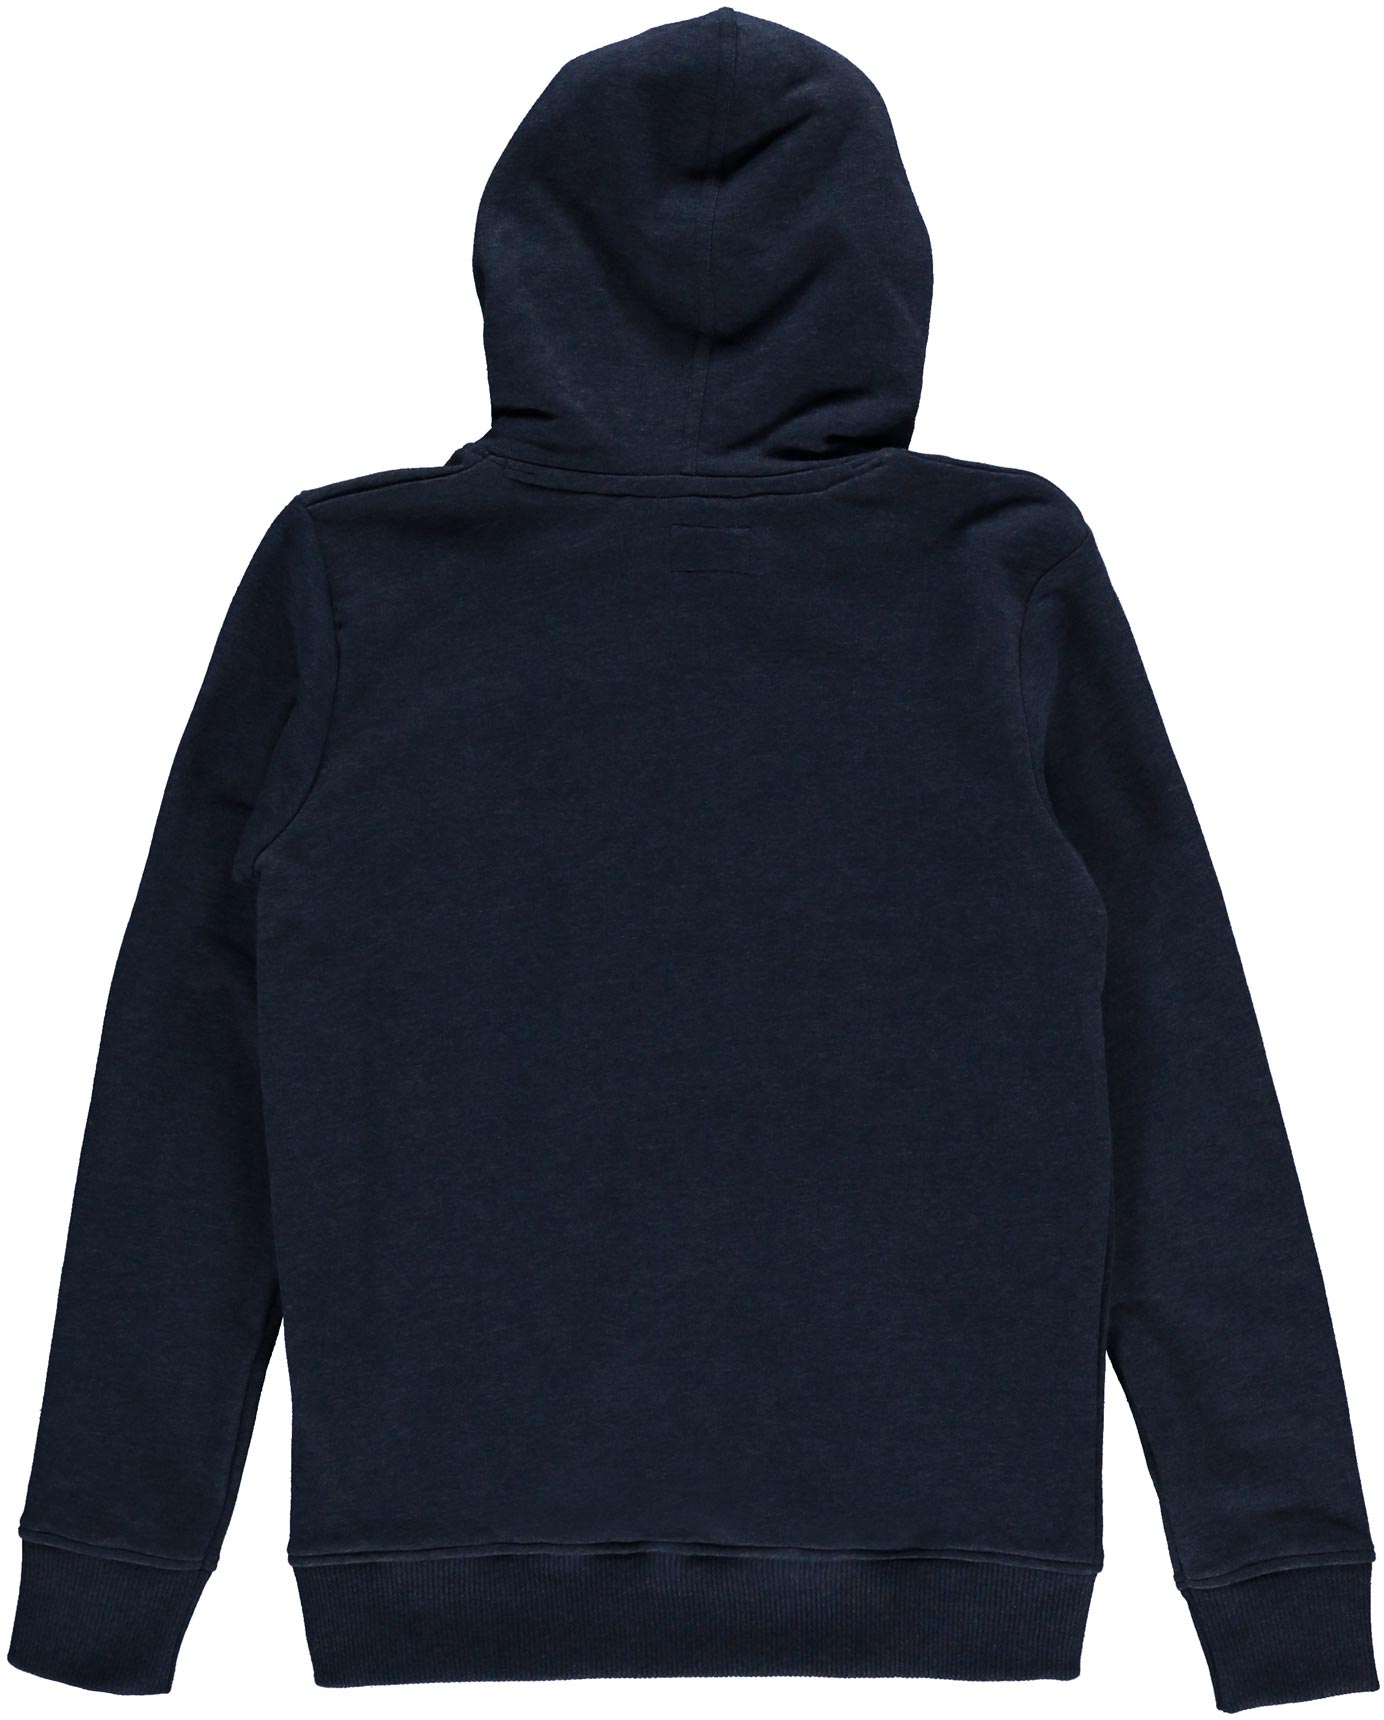 Boys’ hoodie